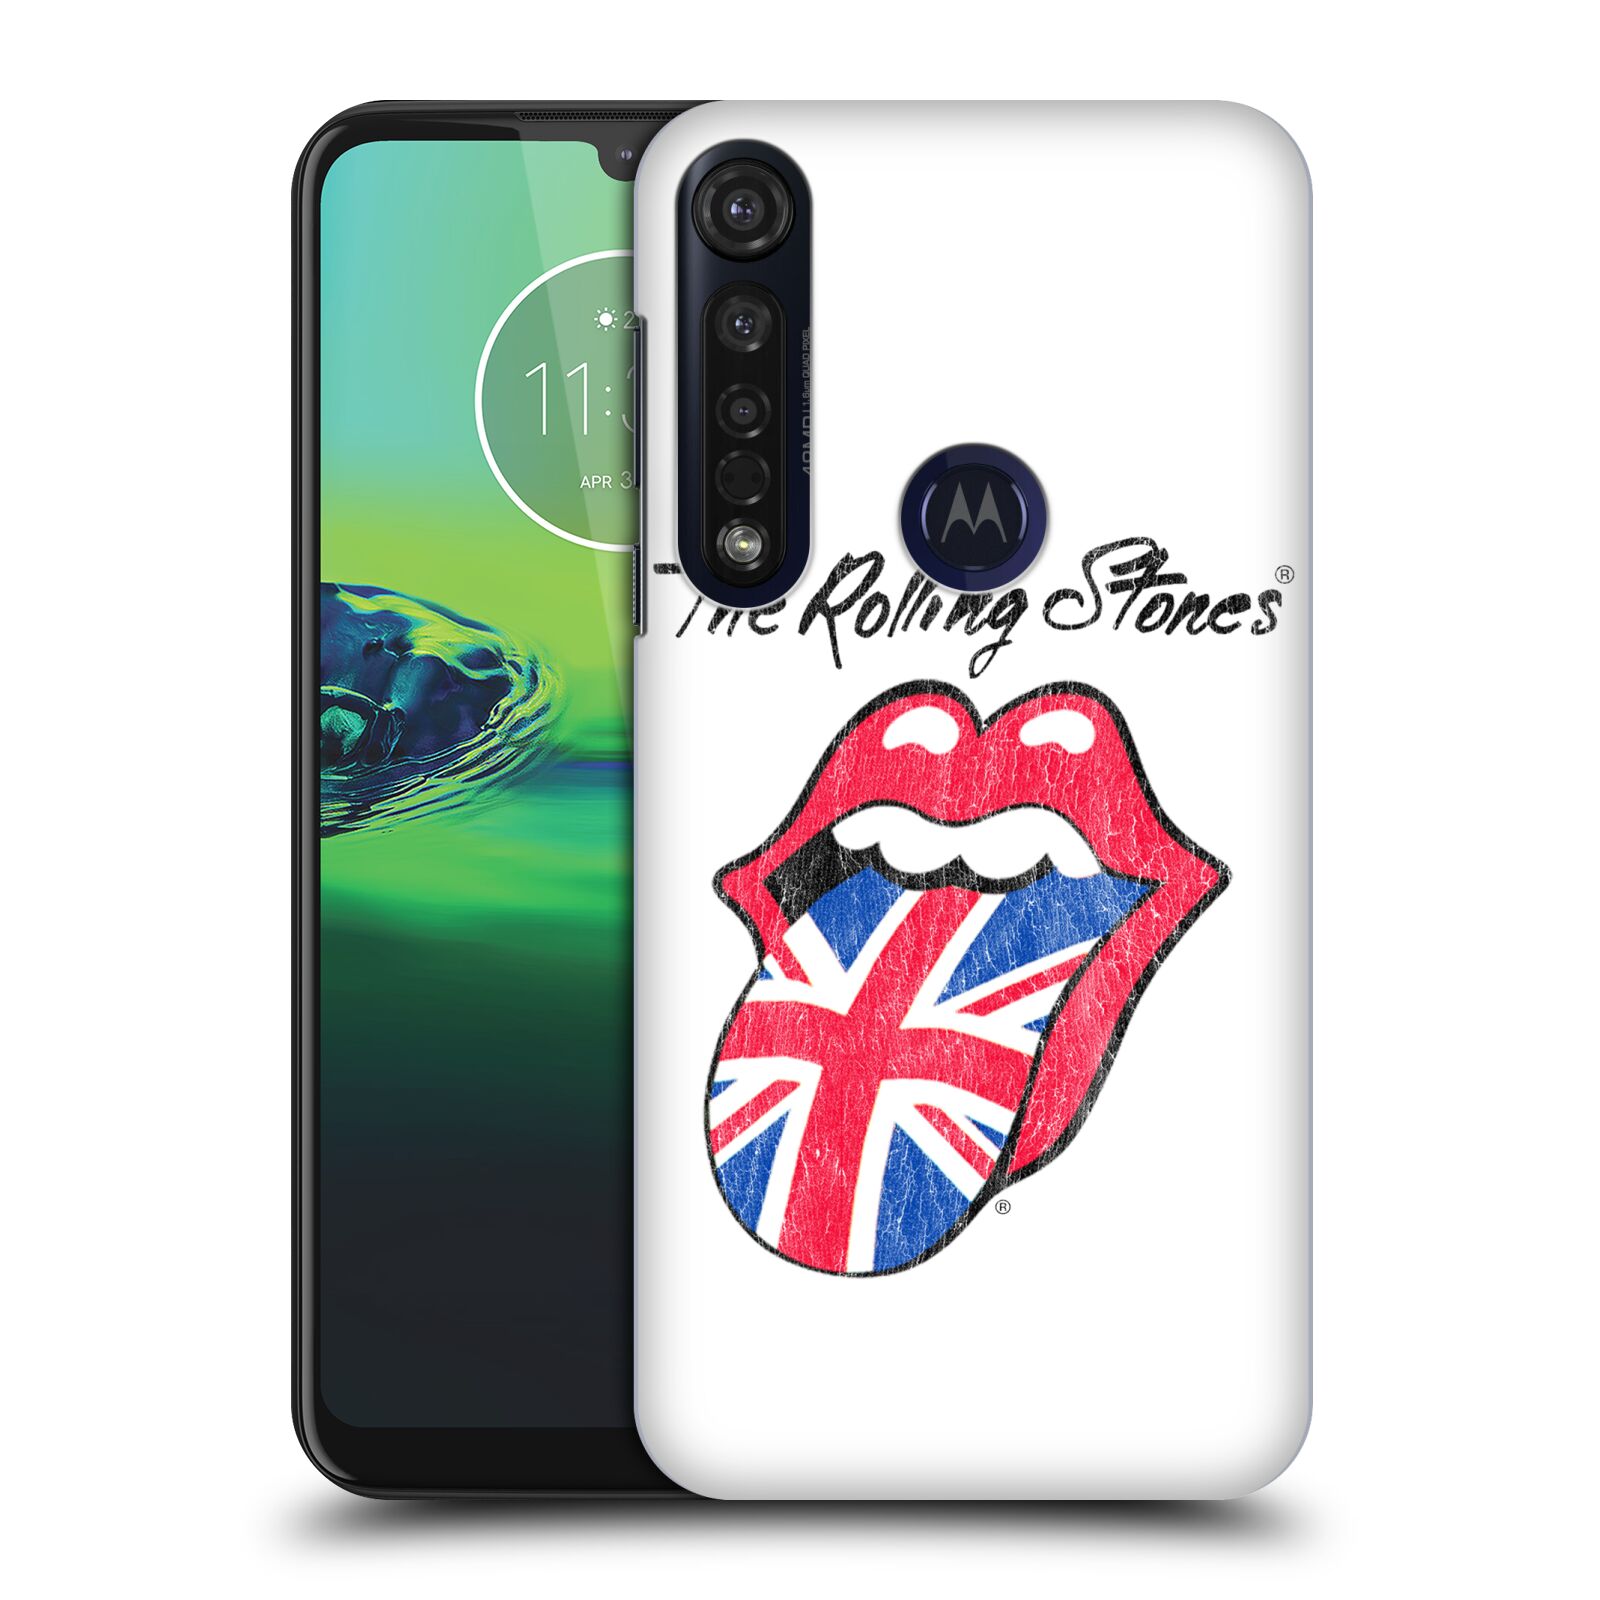 Pouzdro na mobil Motorola Moto G8 PLUS - HEAD CASE - rocková skupina Rolling Stones bílé pozadí